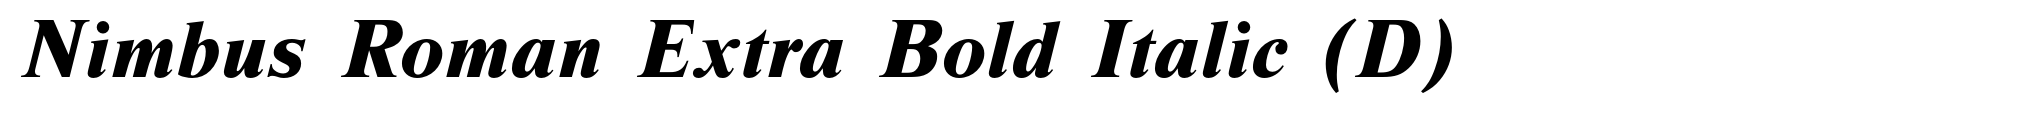 Nimbus Roman Extra Bold Italic (D) image